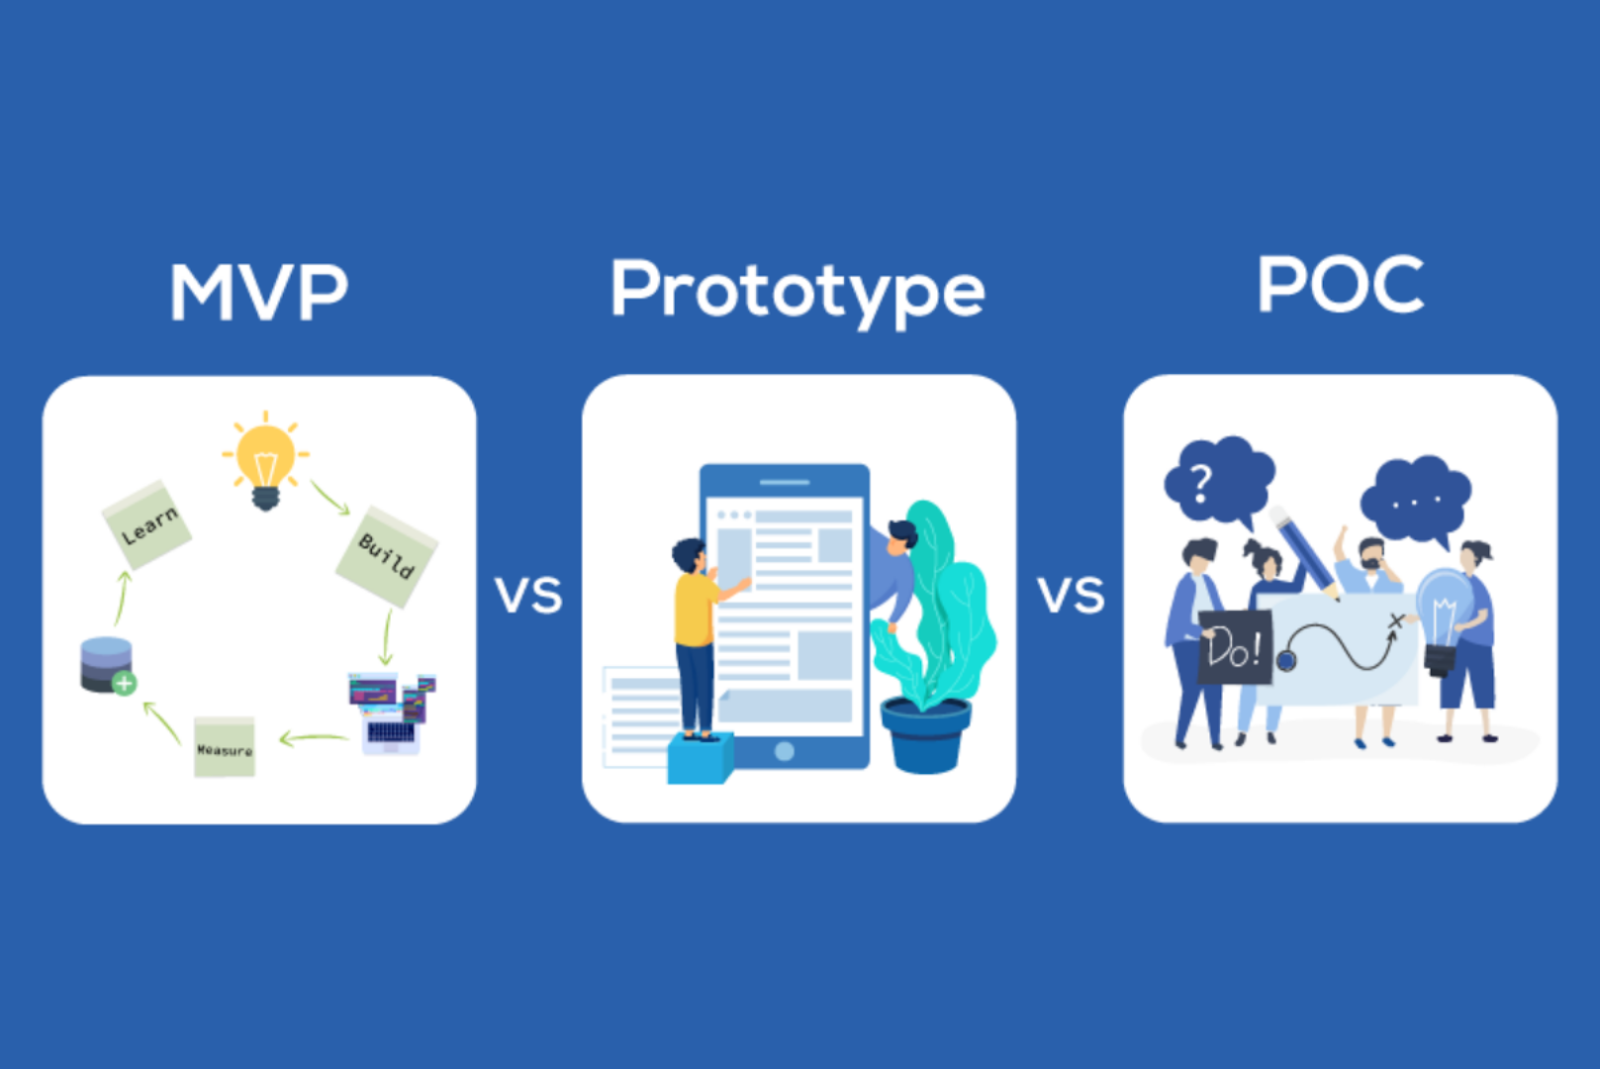 MVP vs Prototype vs POC